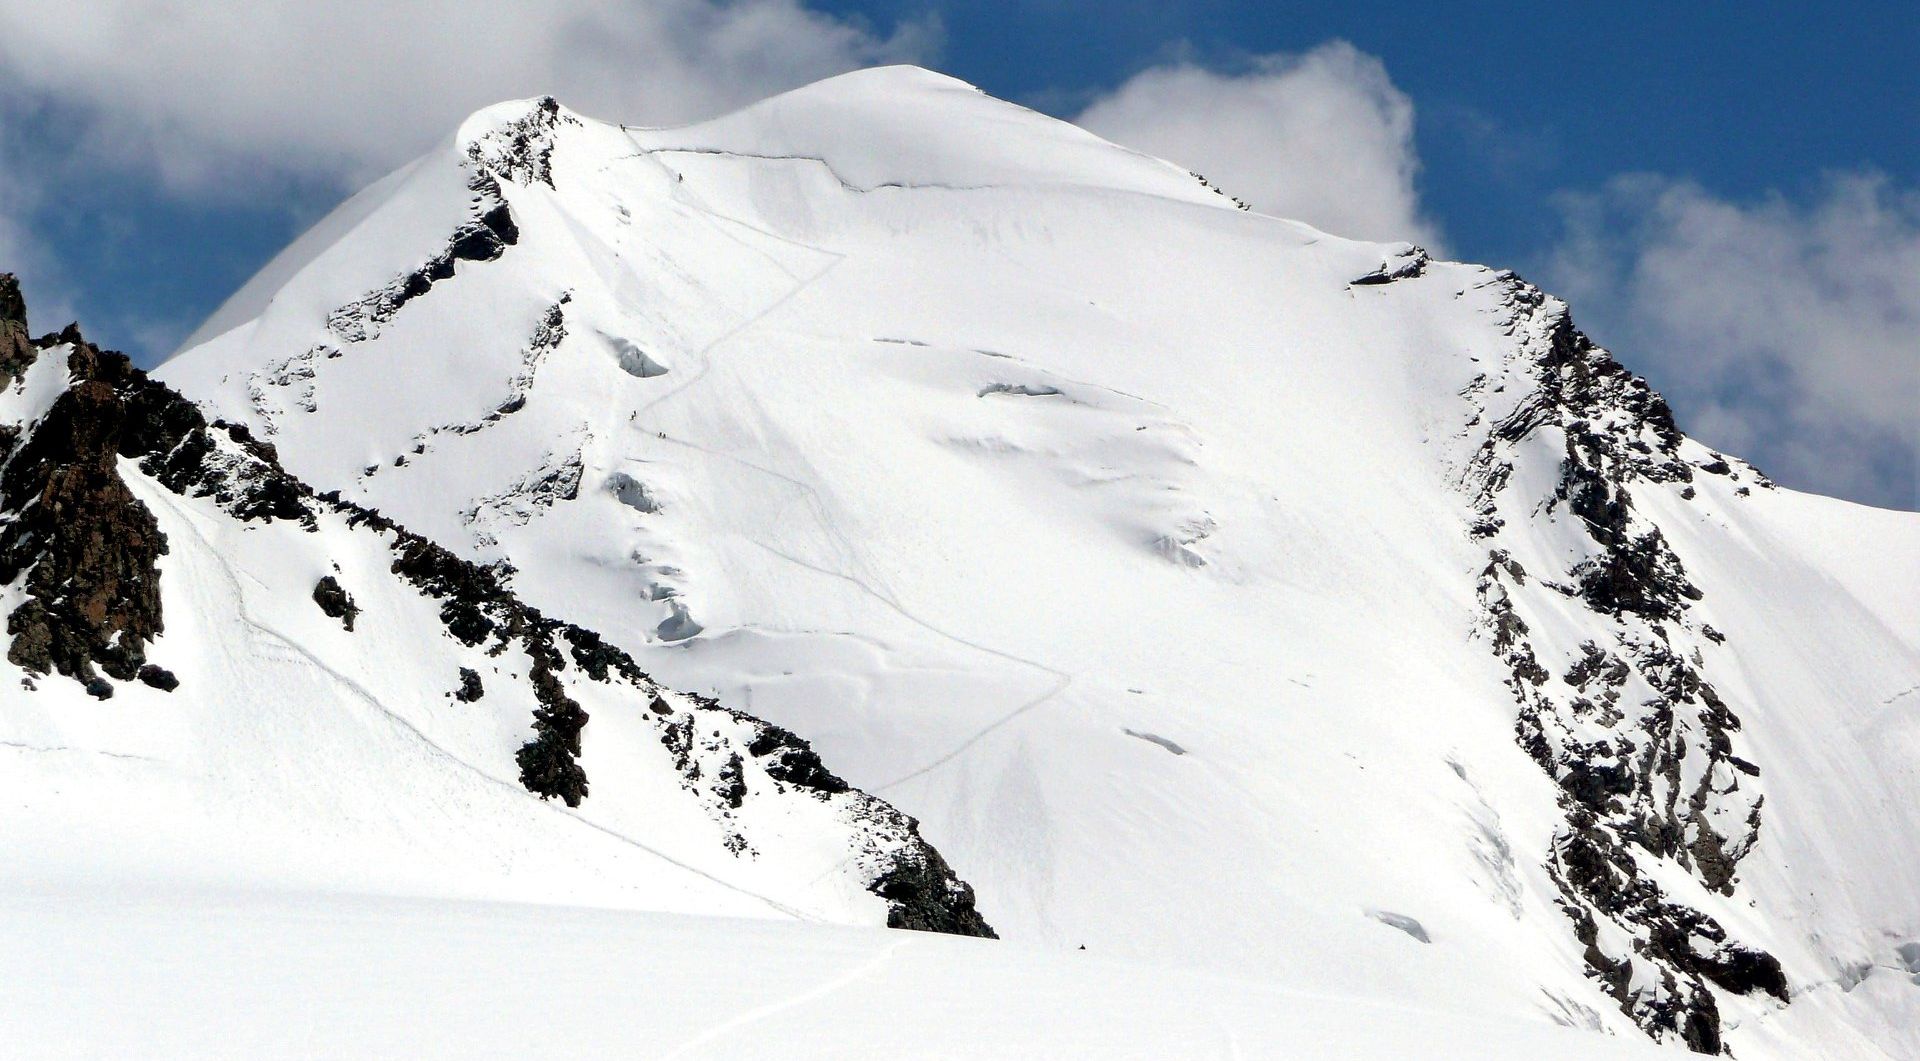 Castor ( 4228 metres ) in the Zermatt Region of the Swiss Alps